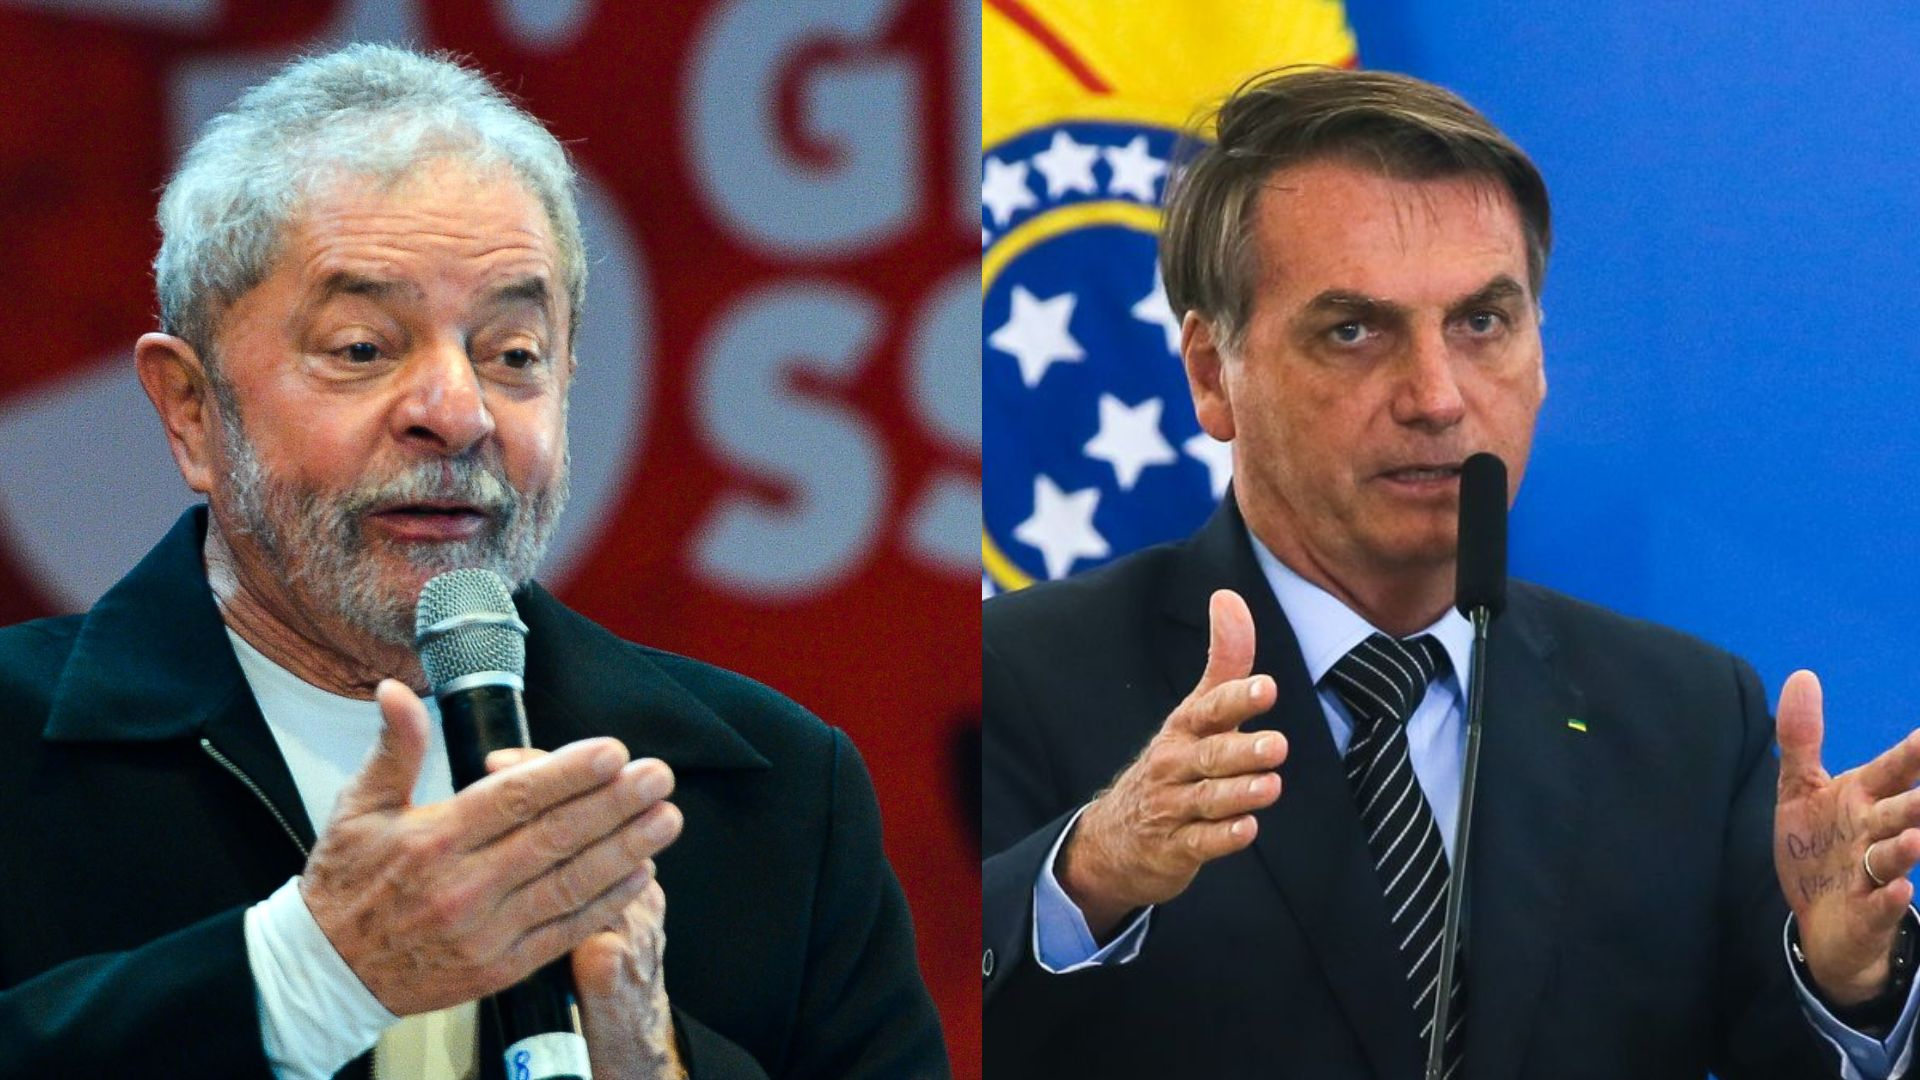 Na pesquisa anterior, Lula pontuou 48% contra 27% de Bolsonaro.